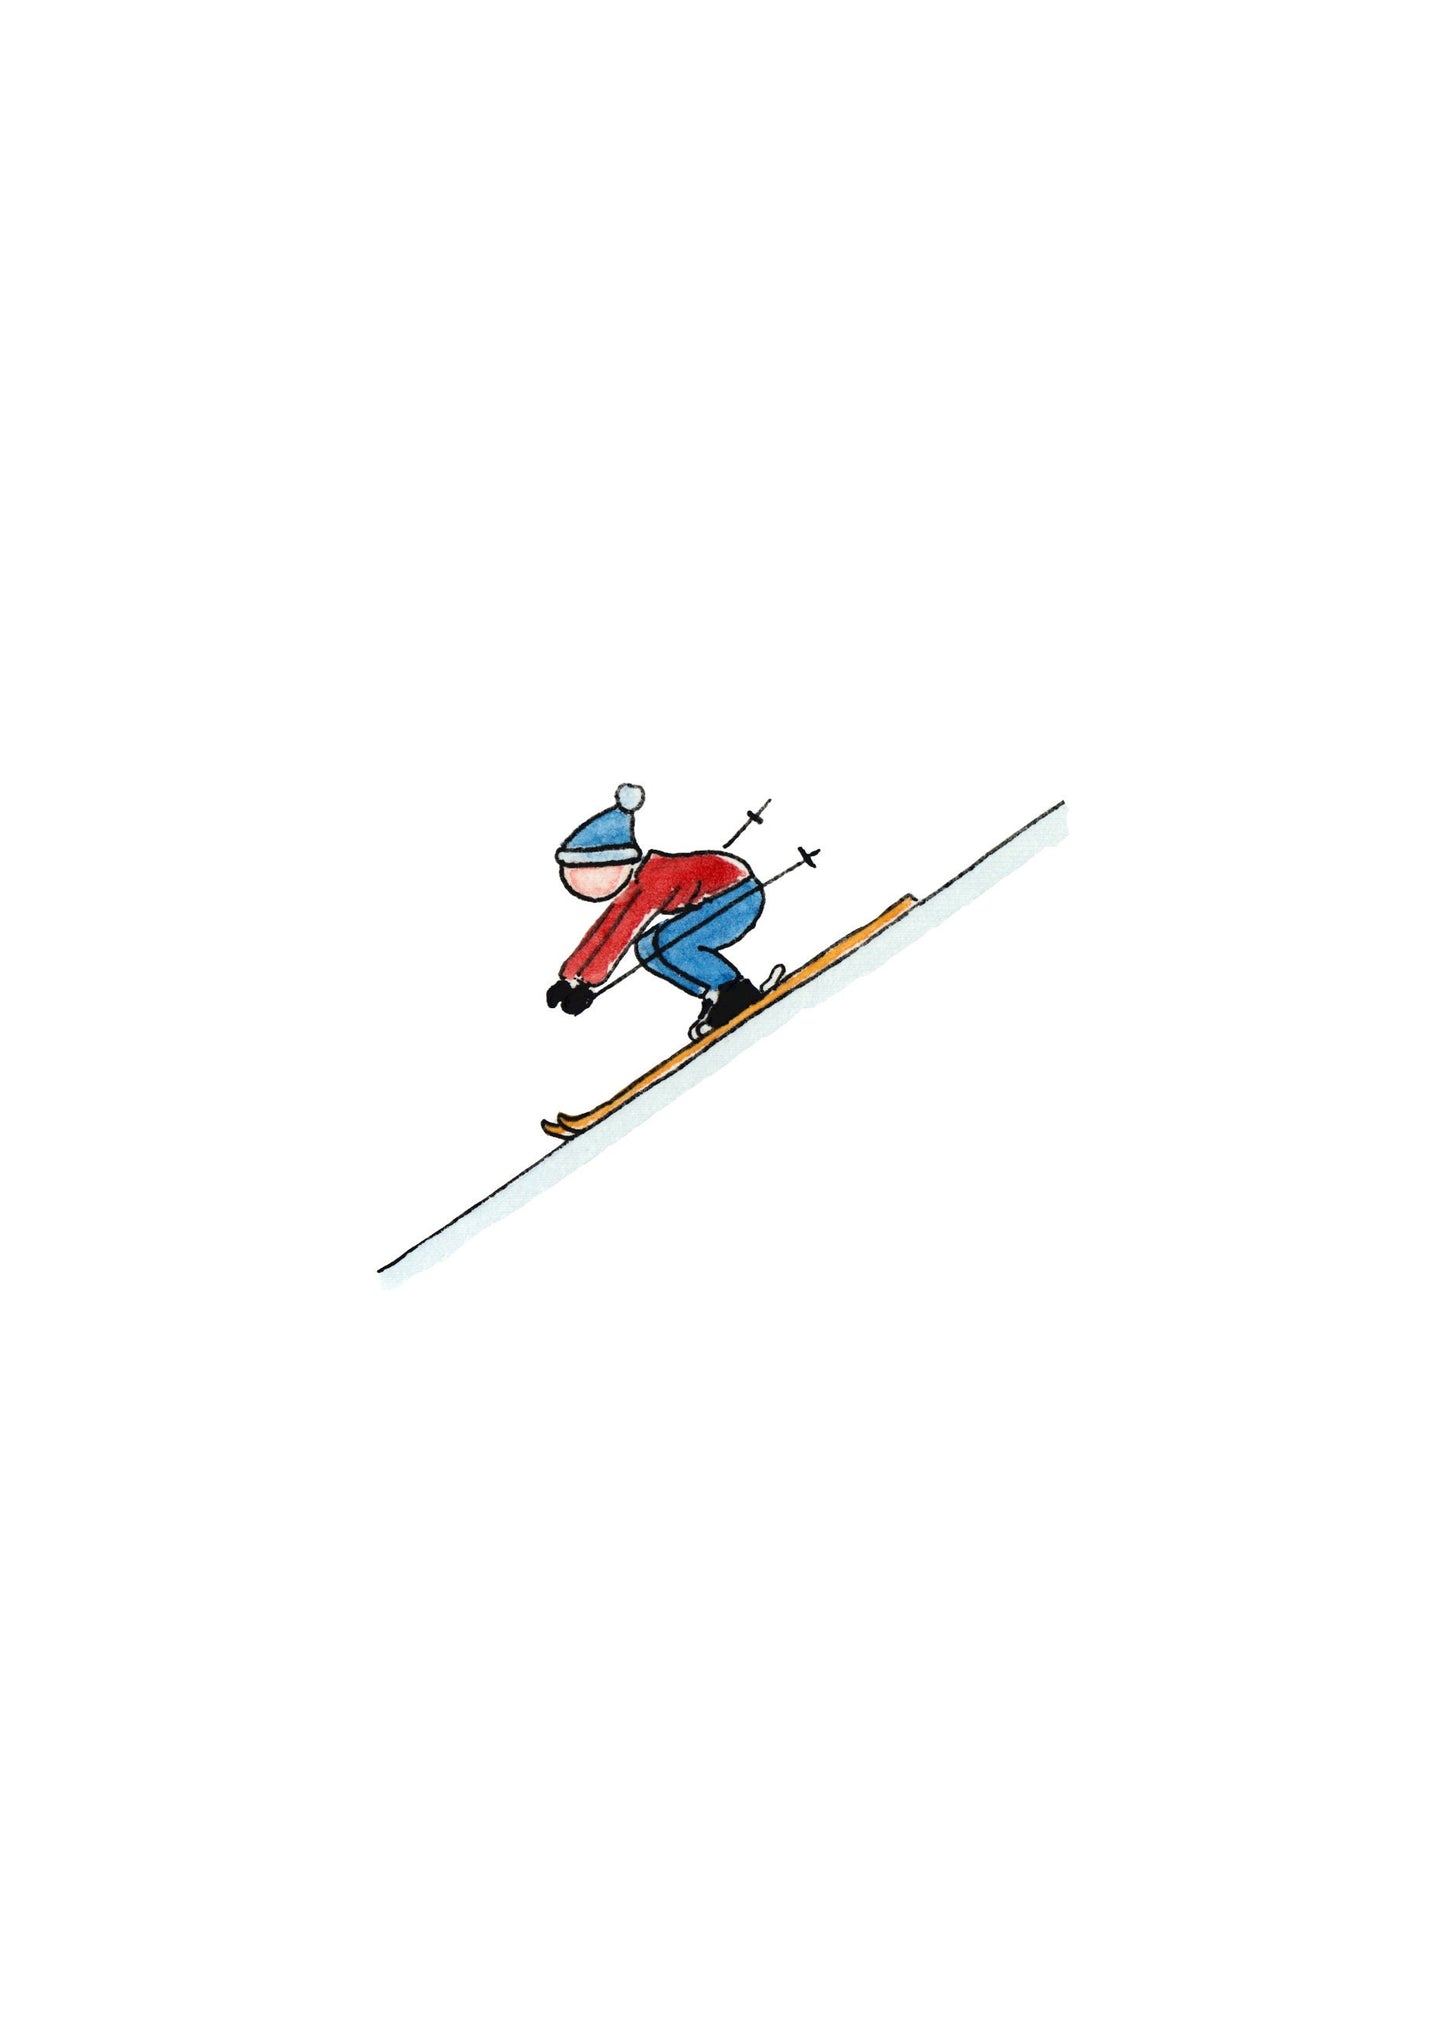 Skier Tucking